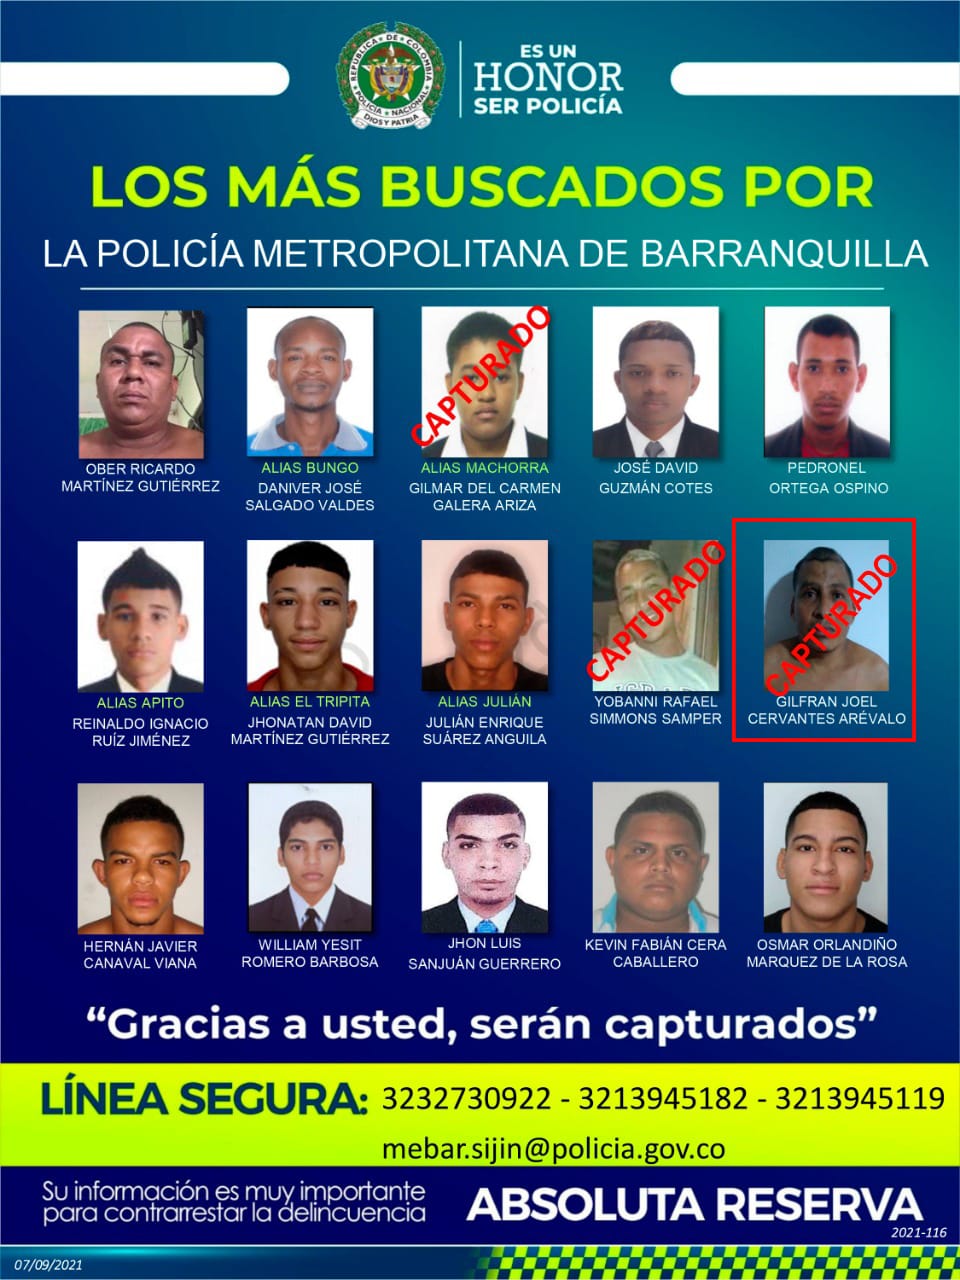 Ober Ricardo Martínez Gutiérrez encabeza la lista del cartel de los más buscados en Barranquilla. 